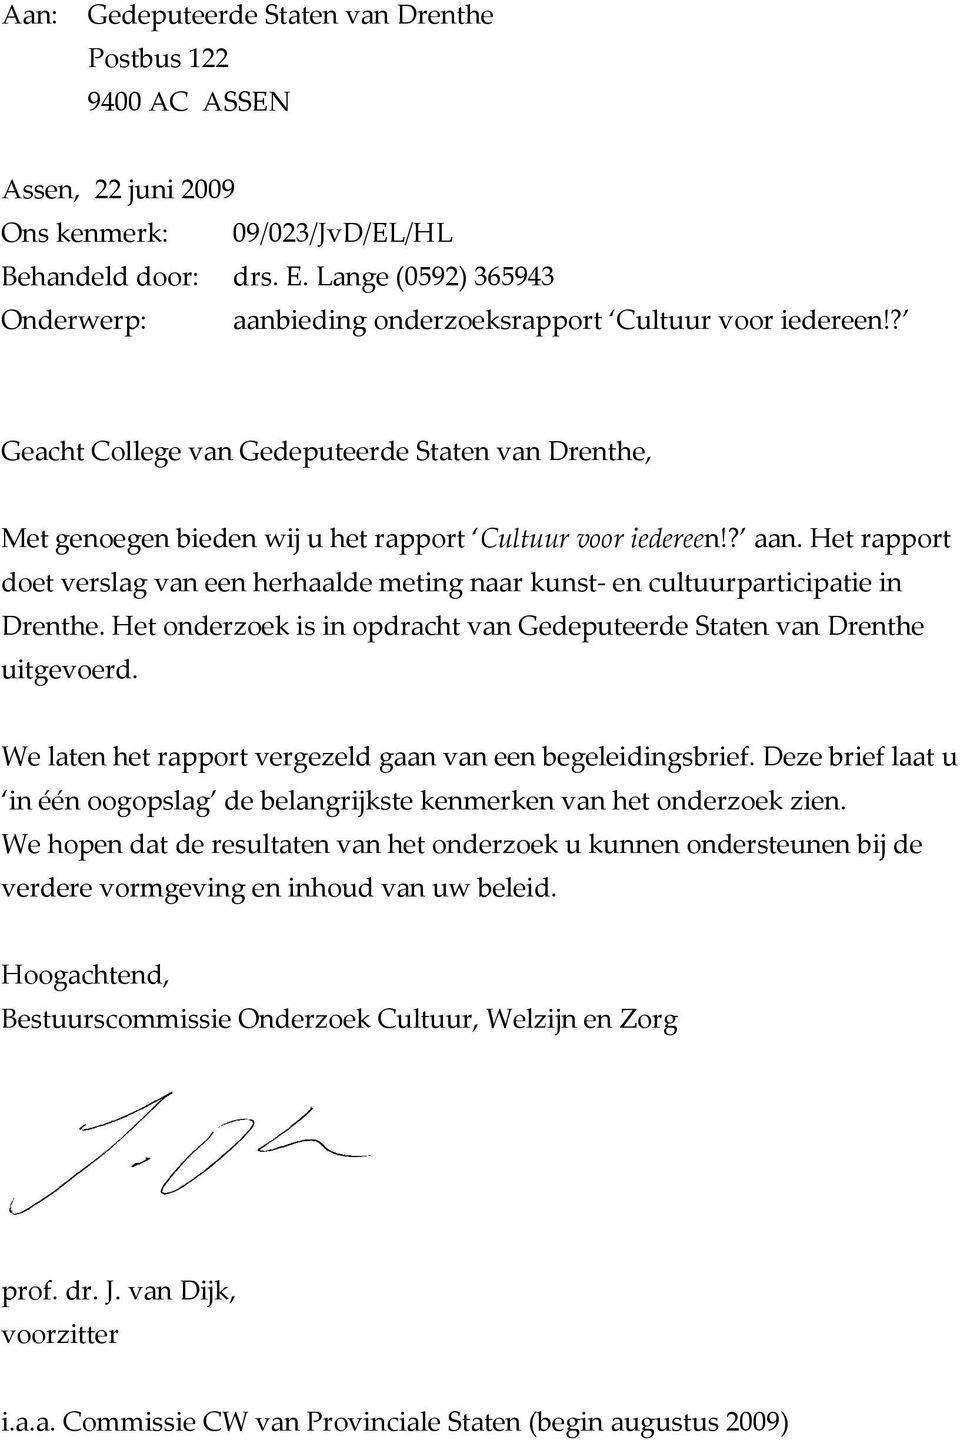 ? aan. Het rapport doet verslag van een herhaalde meting naar kunst- en cultuurparticipatie in Drenthe. Het onderzoek is in opdracht van Gedeputeerde Staten van Drenthe uitgevoerd.